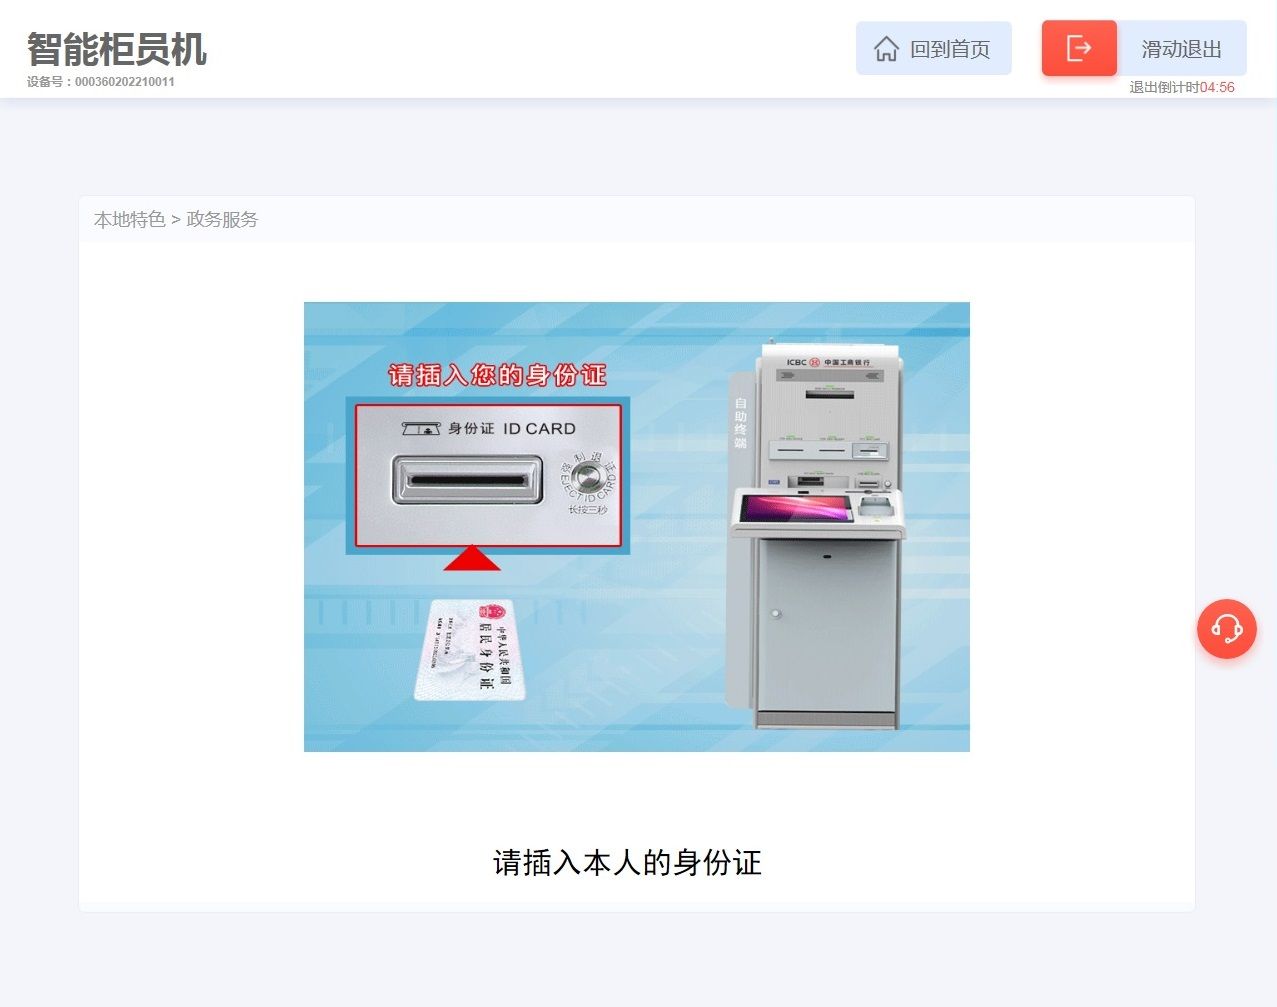 请你以上海进出口公司跟单员童利的身份 采购合同_edge浏览器新标签打开_浏览器没有以管理员身份打开